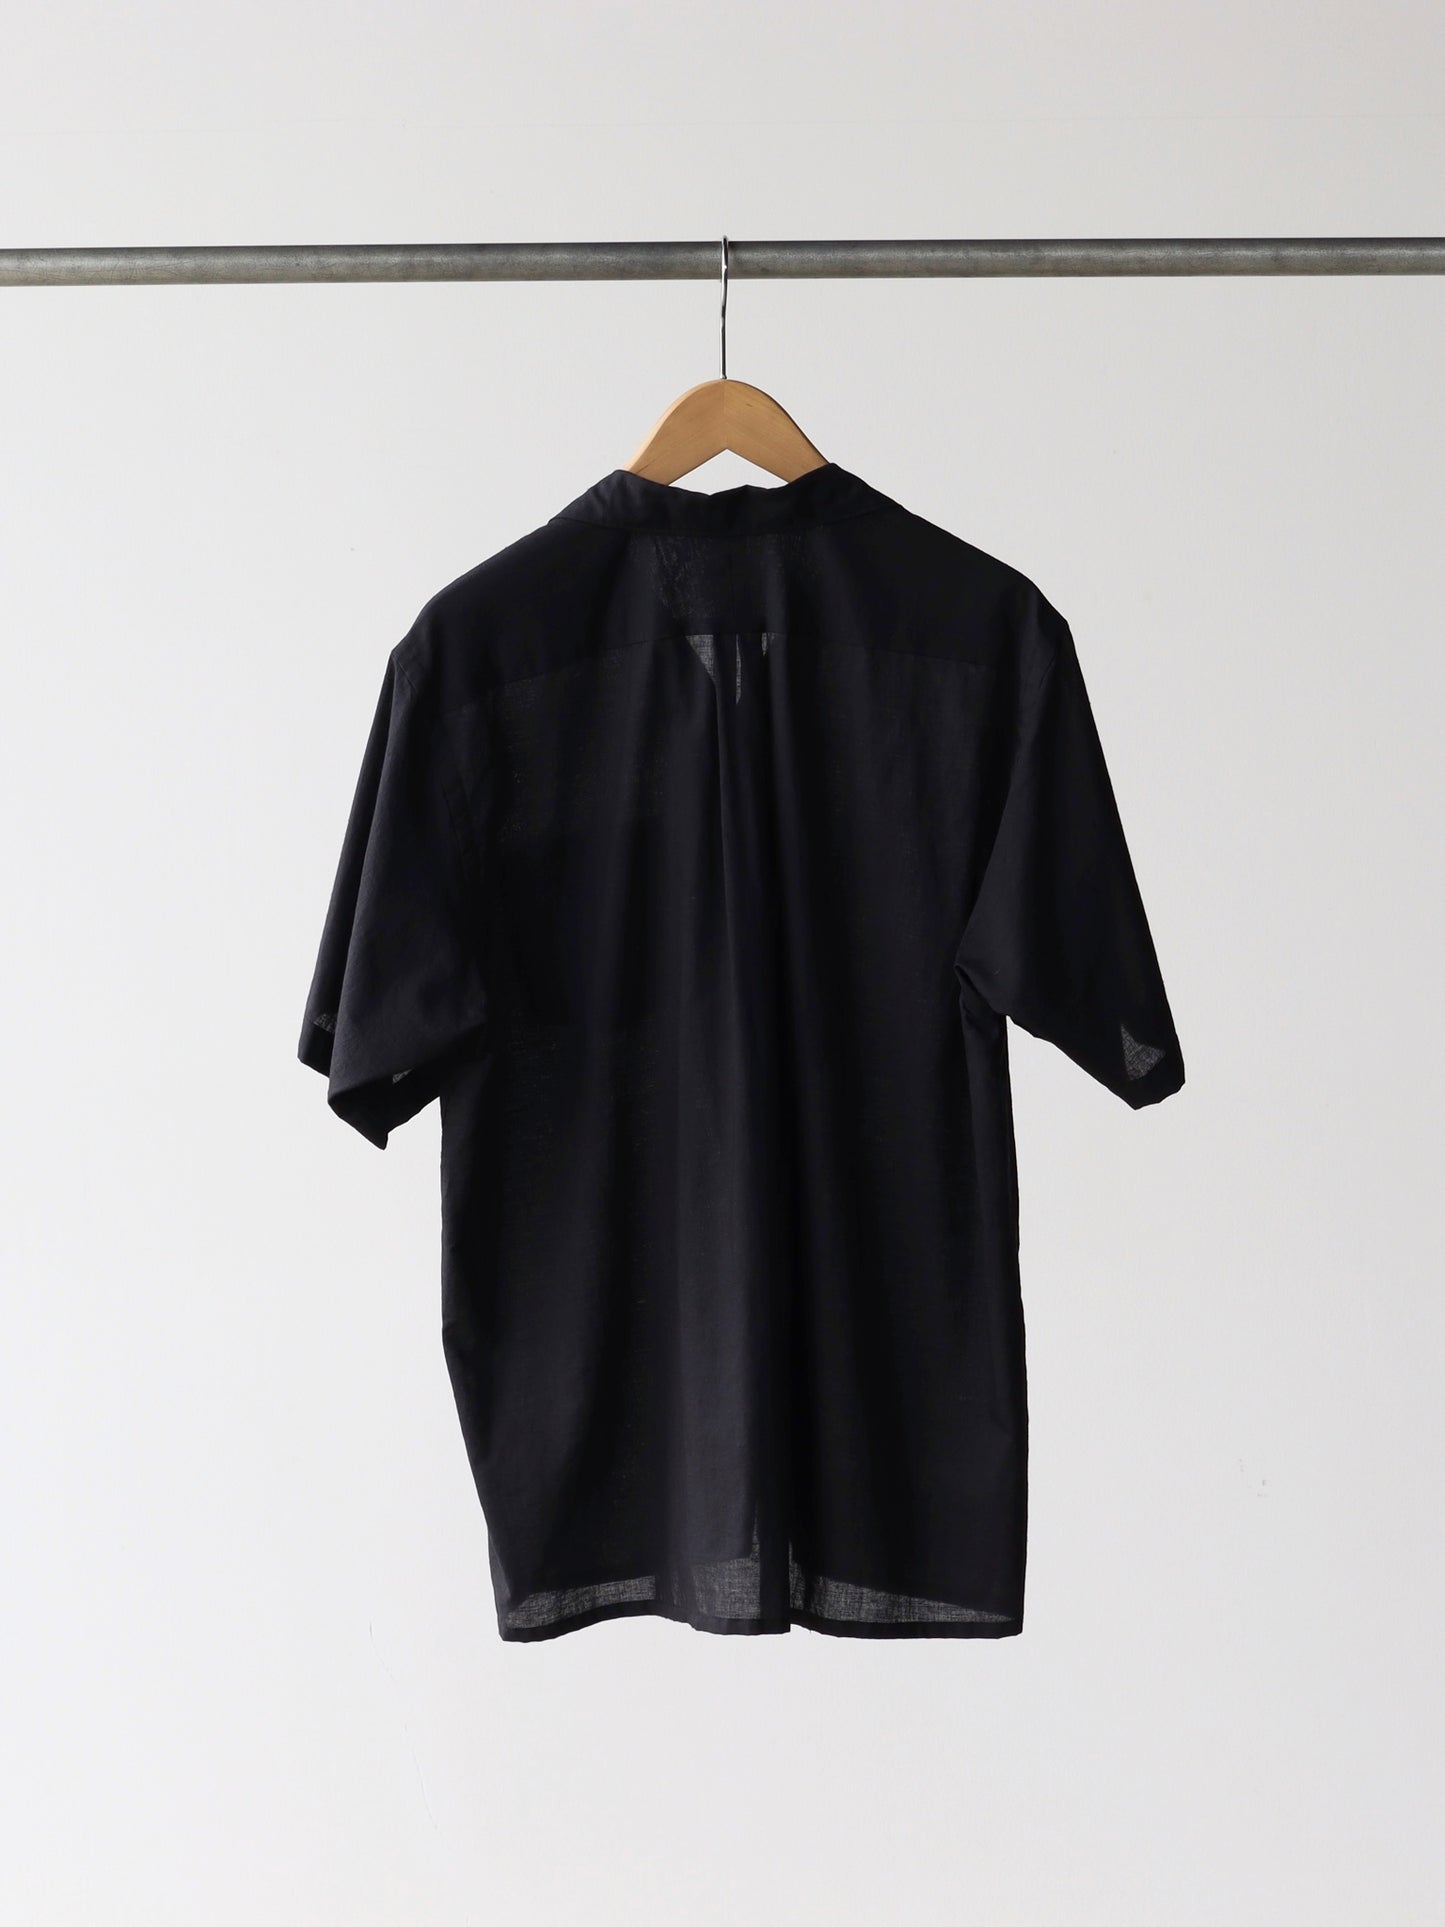 comoli-khadiコットン半袖-オープンカラーシャツ-black-2